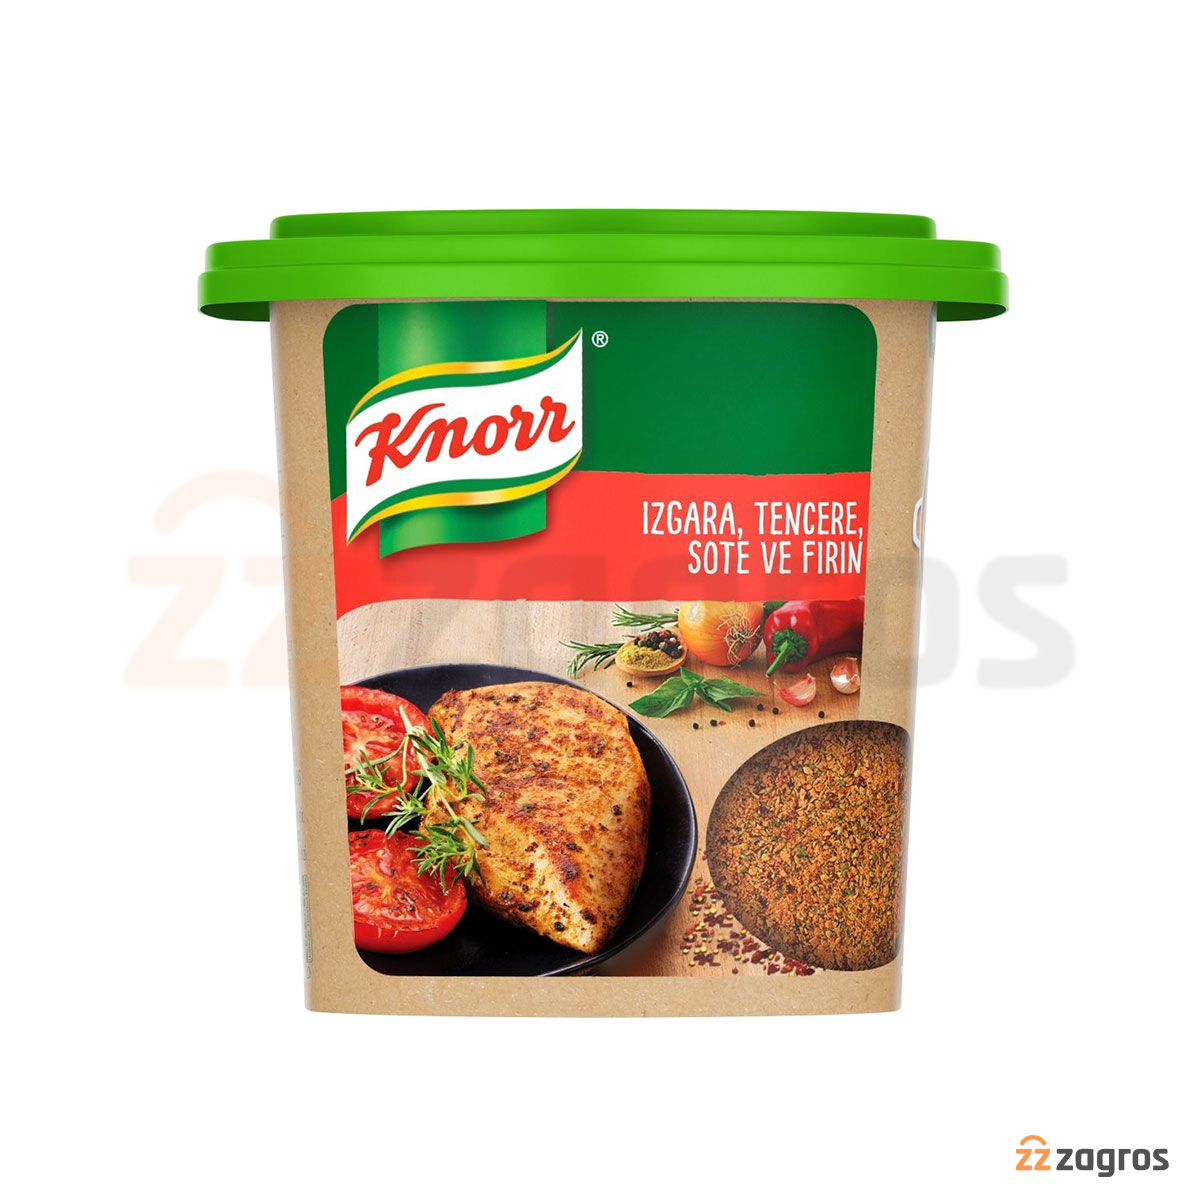 خرید ادویه مرغ کنور Knorr قیمت عمده سفارش و قیمت ادویه مرغ کنور Knorr | قیمت عمده ادویه کنور | واردکننده اصلی ادویه کنور در ایران | Knorr Chicken Powder